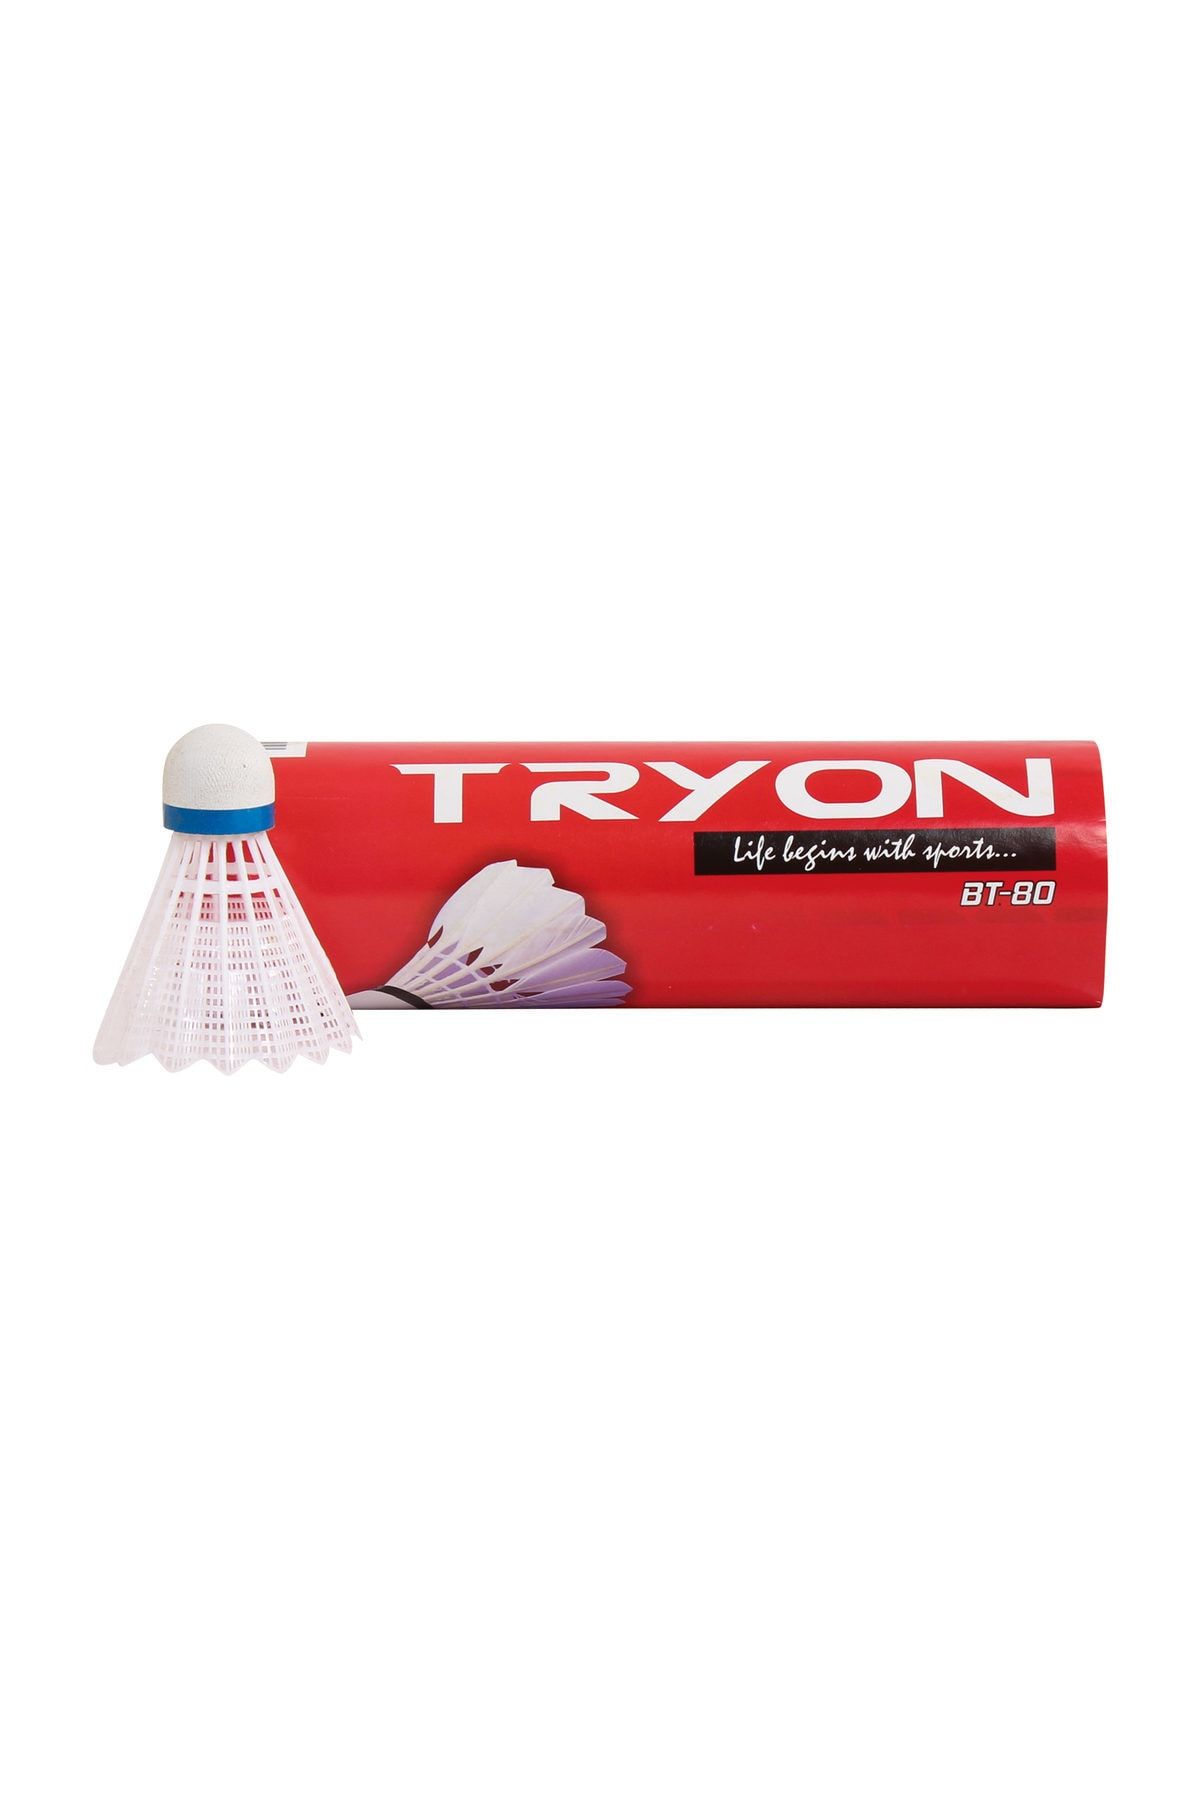 TRYON Badminton Topu Mantar Başlı Naylon 6 Lı